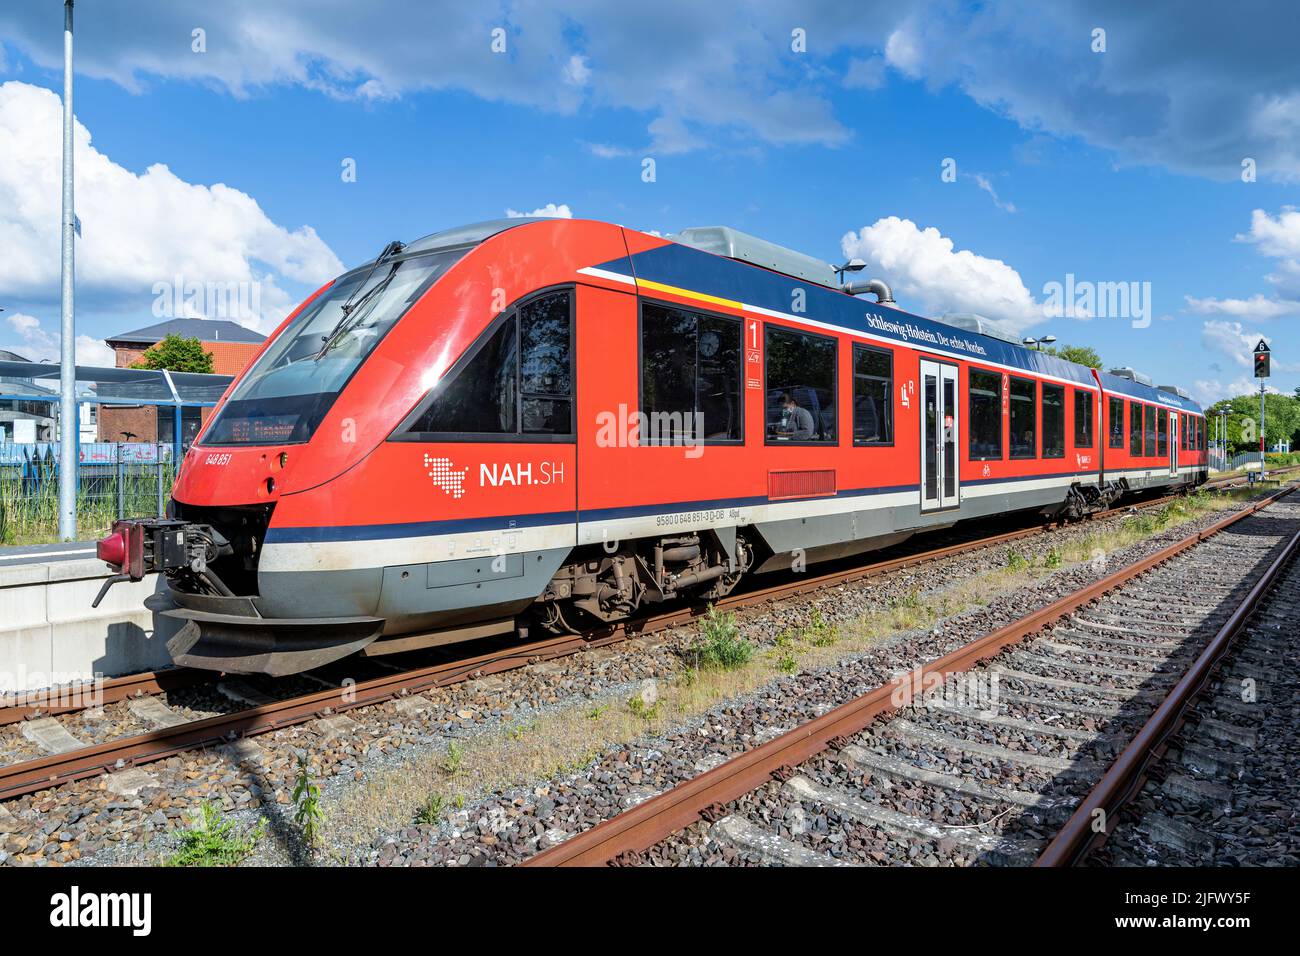 NAH.SH Alstom Coradia LINT 41 treno alla stazione di Eckernförde Foto Stock